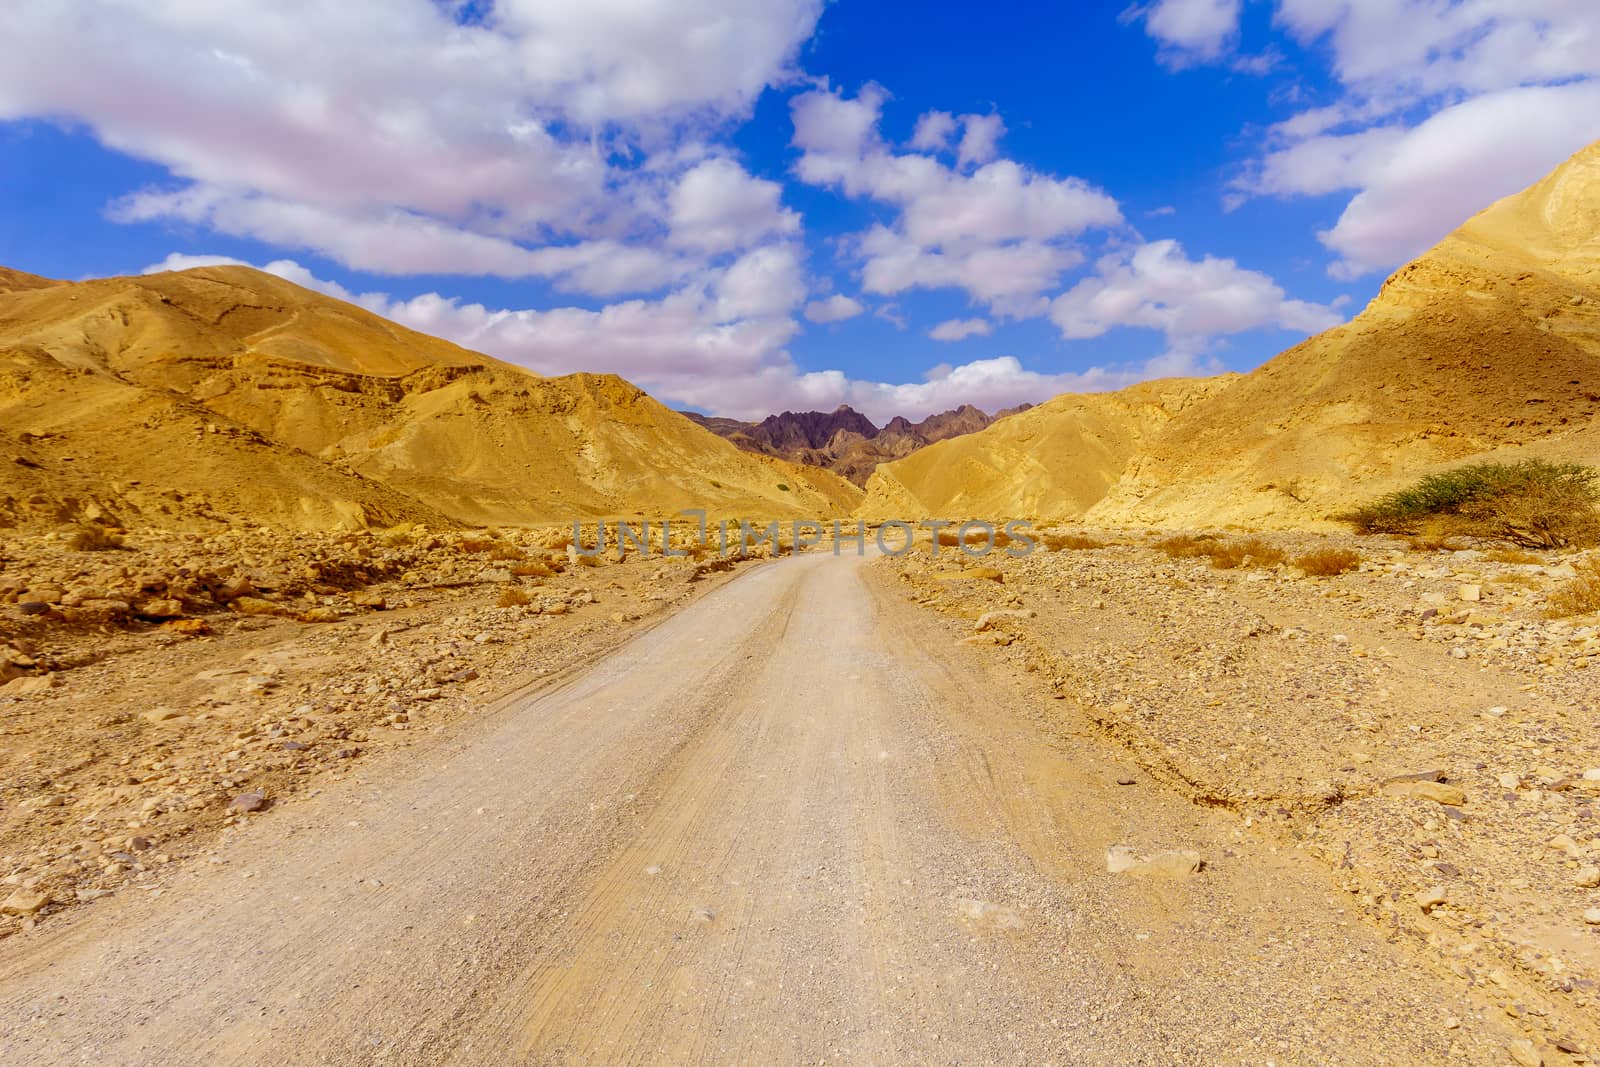 Nahal Amram (desert valley) and the Arava desert landscape by RnDmS